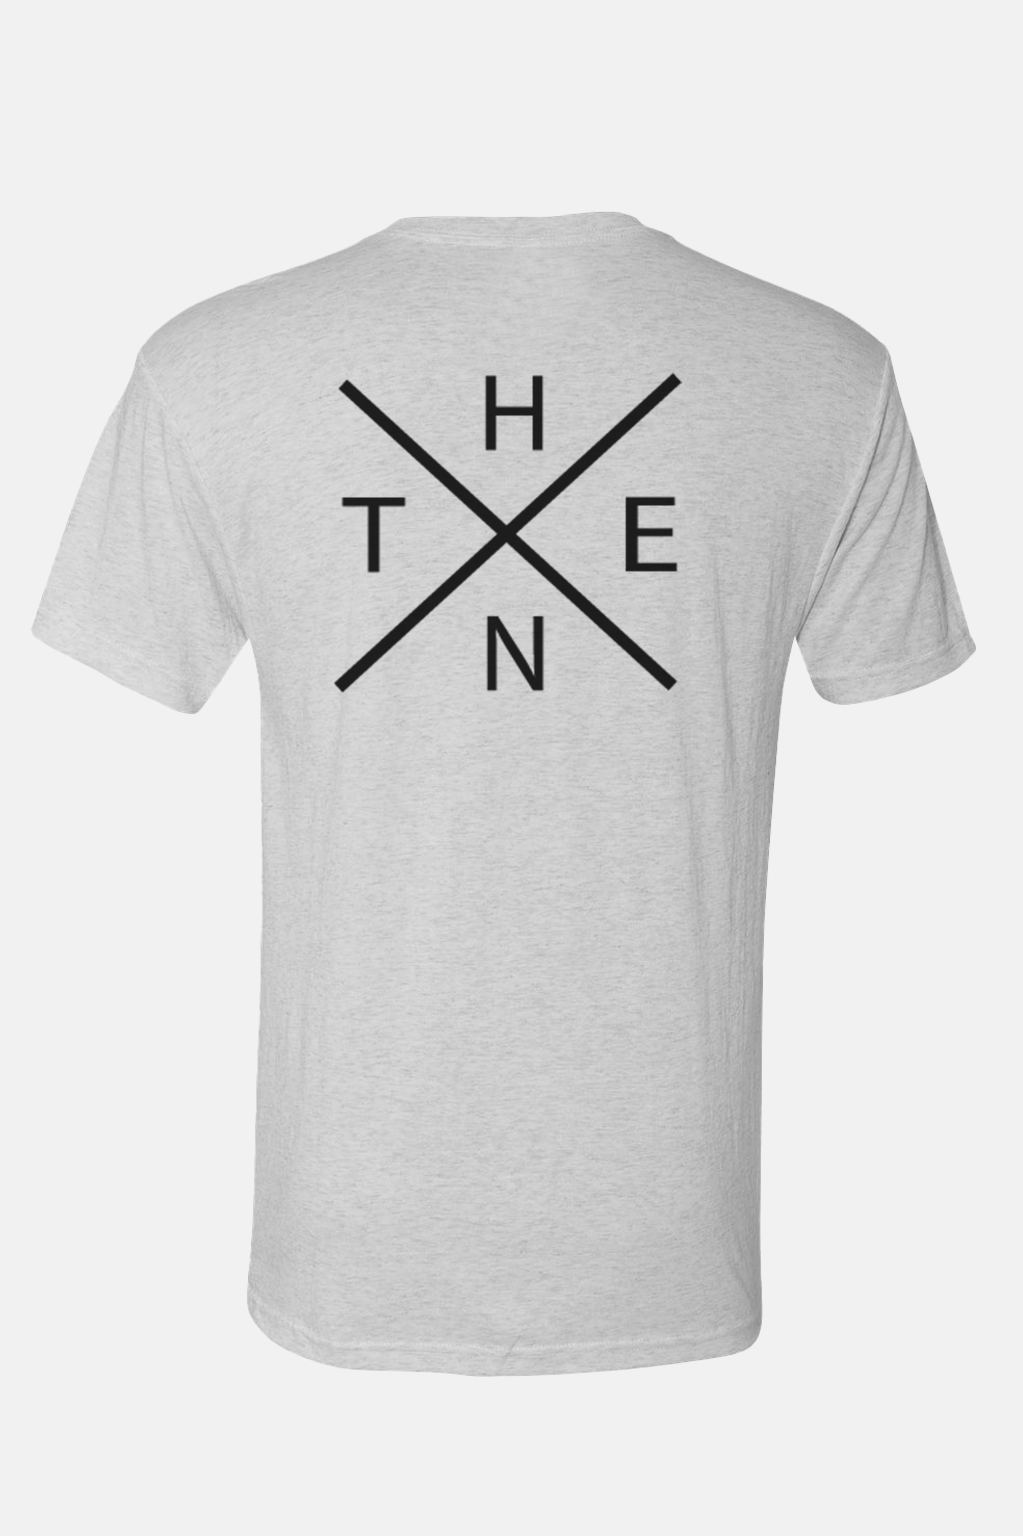 Thenx Ash Tees (OX Logo) - THENX